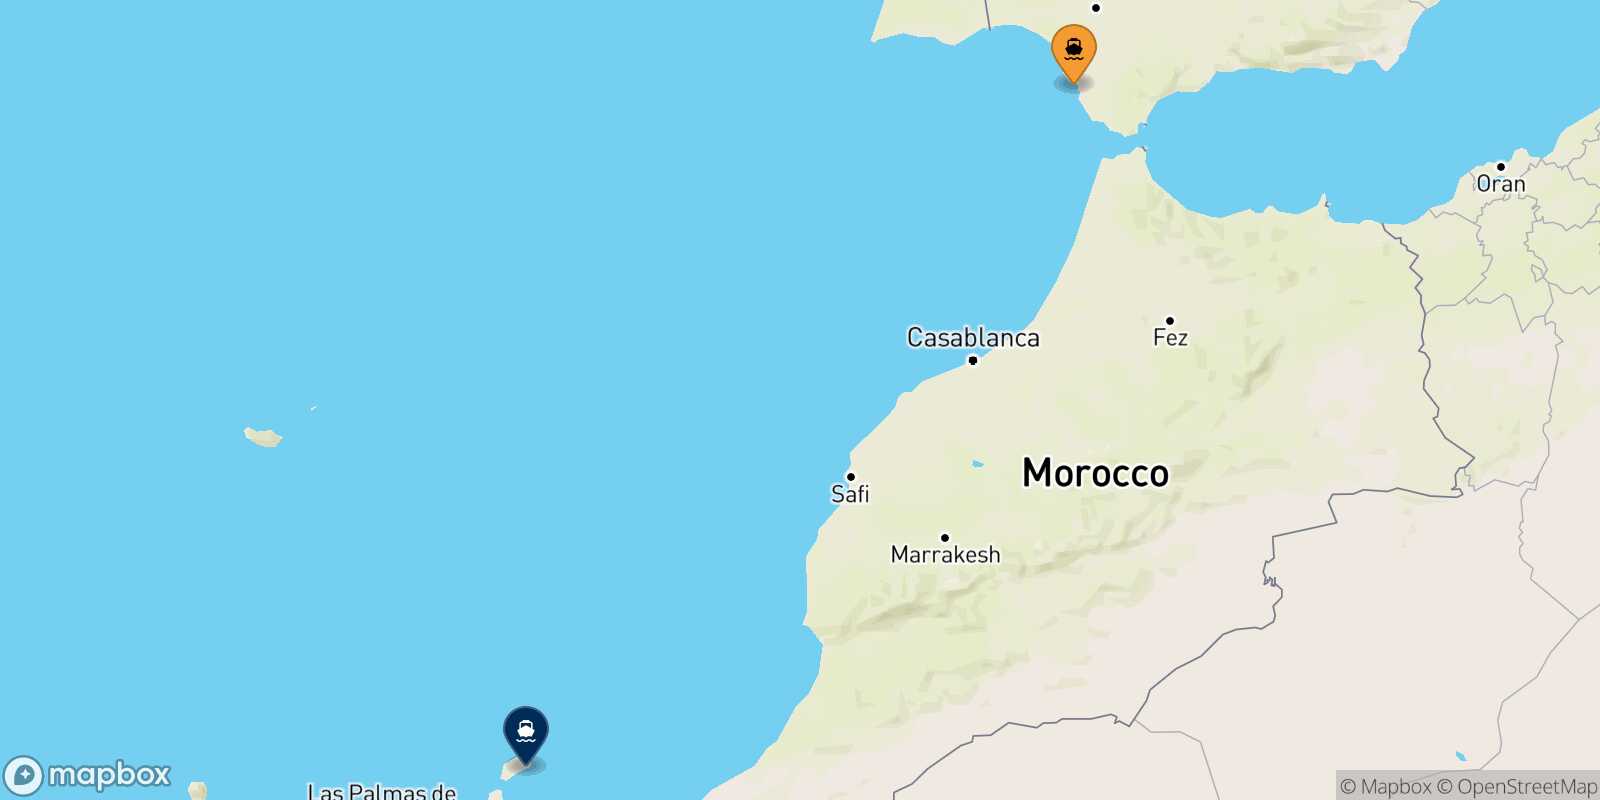 Carte des traverséesCadiz Arrecife (Lanzarote)